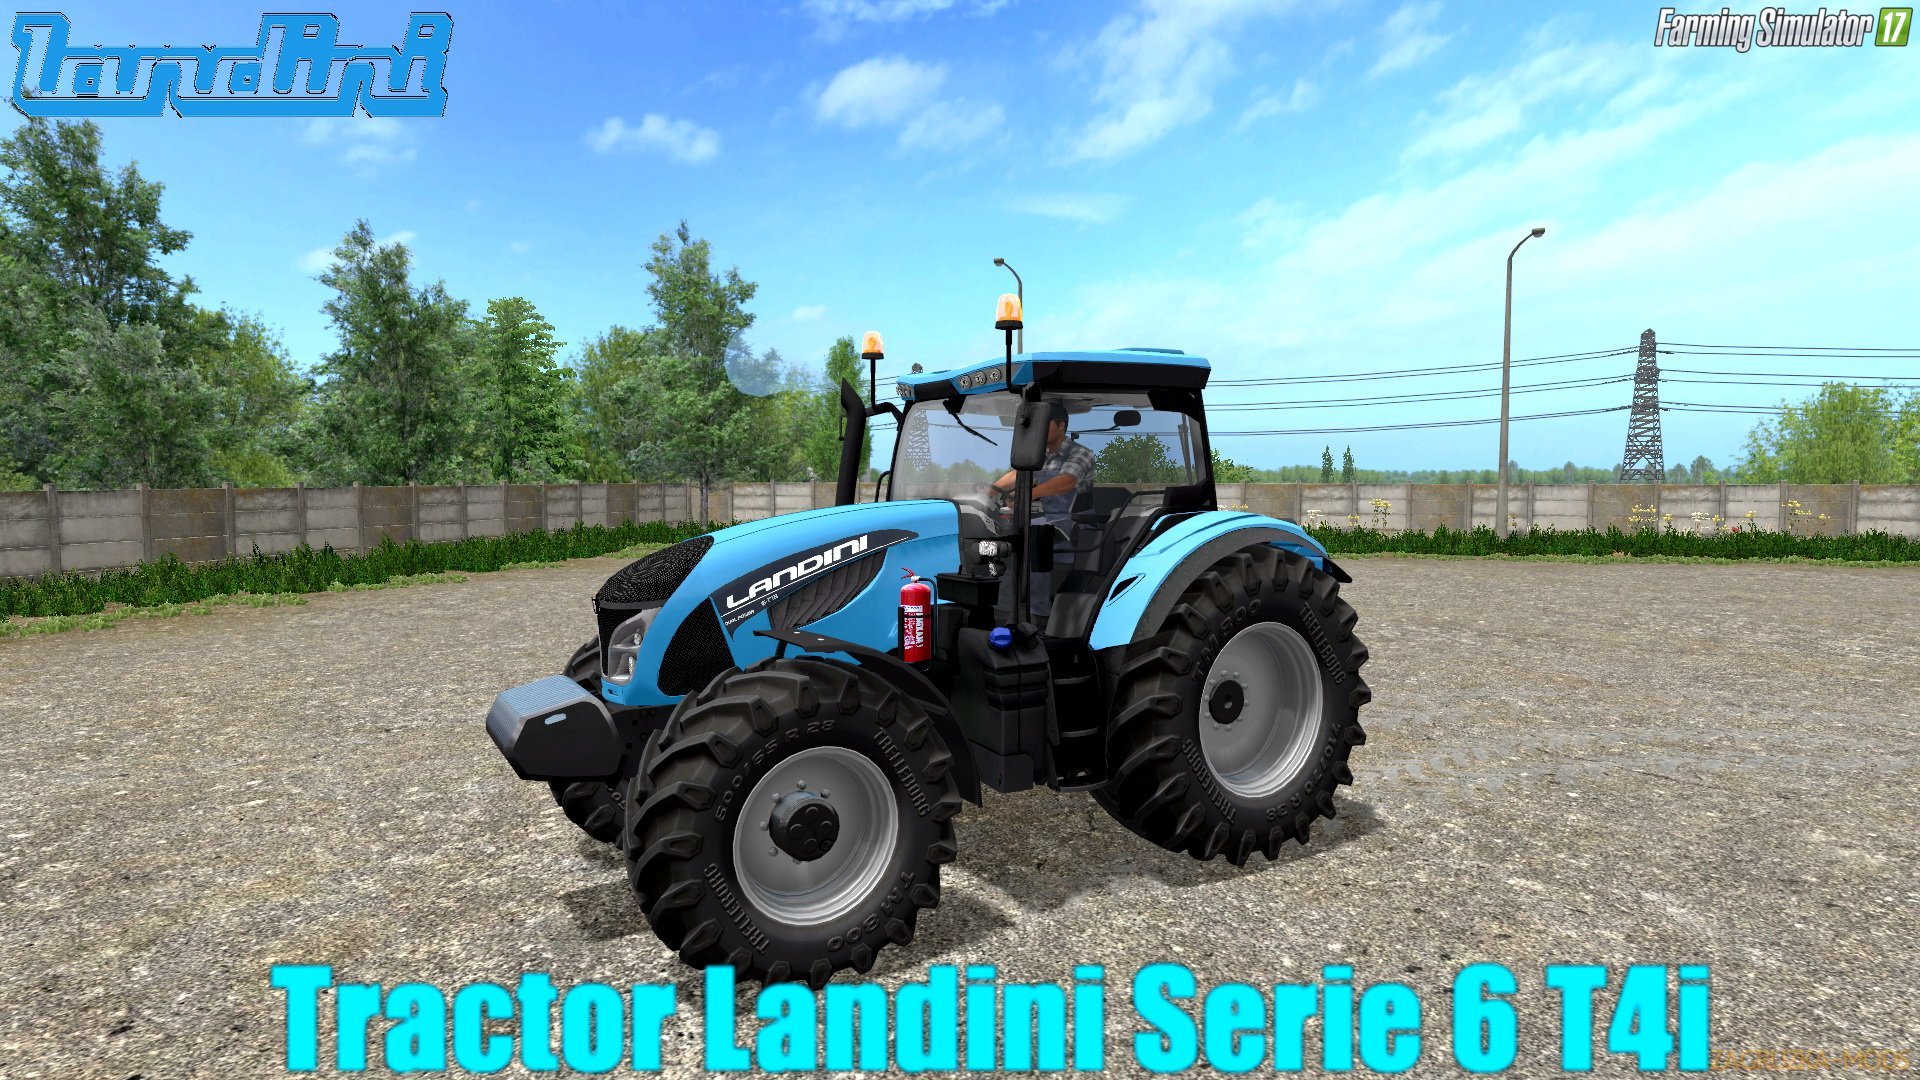 Landini Serie 6 T4i v1.0 for FS 17